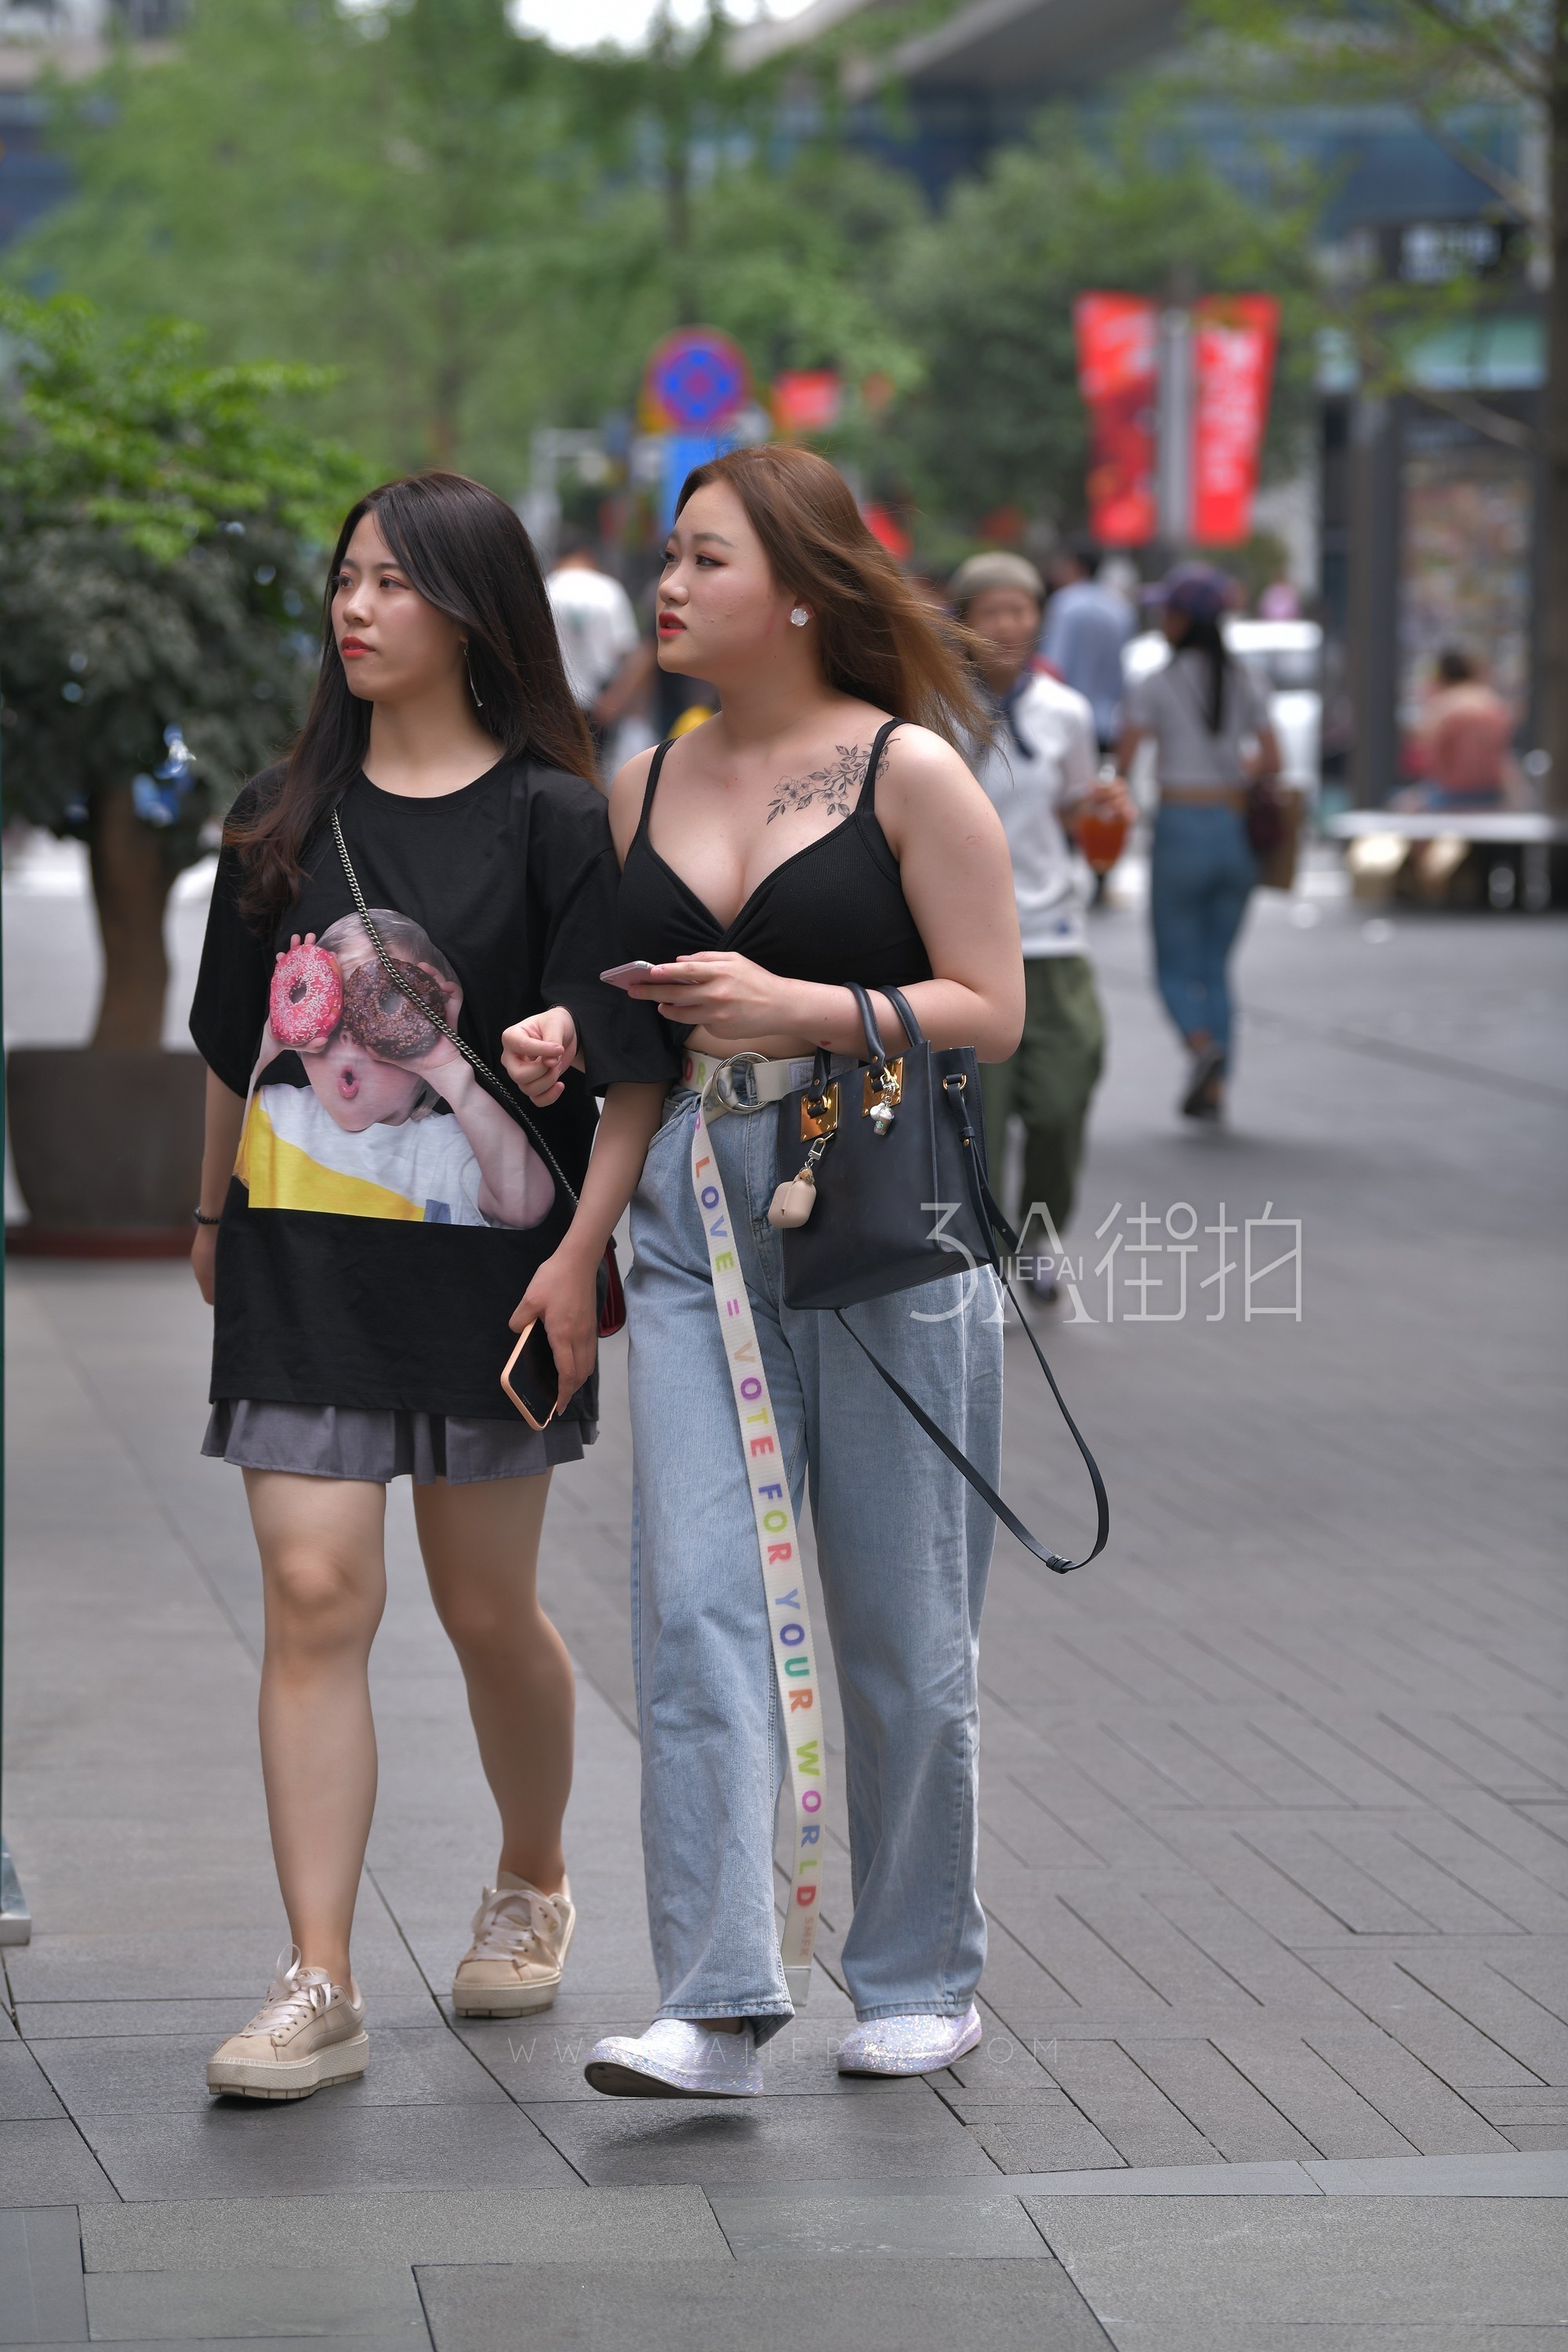 艳冠群芳的妖娆女孩，广州街拍[QT·939qr] - 免费·街拍图片 - 第一街拍网